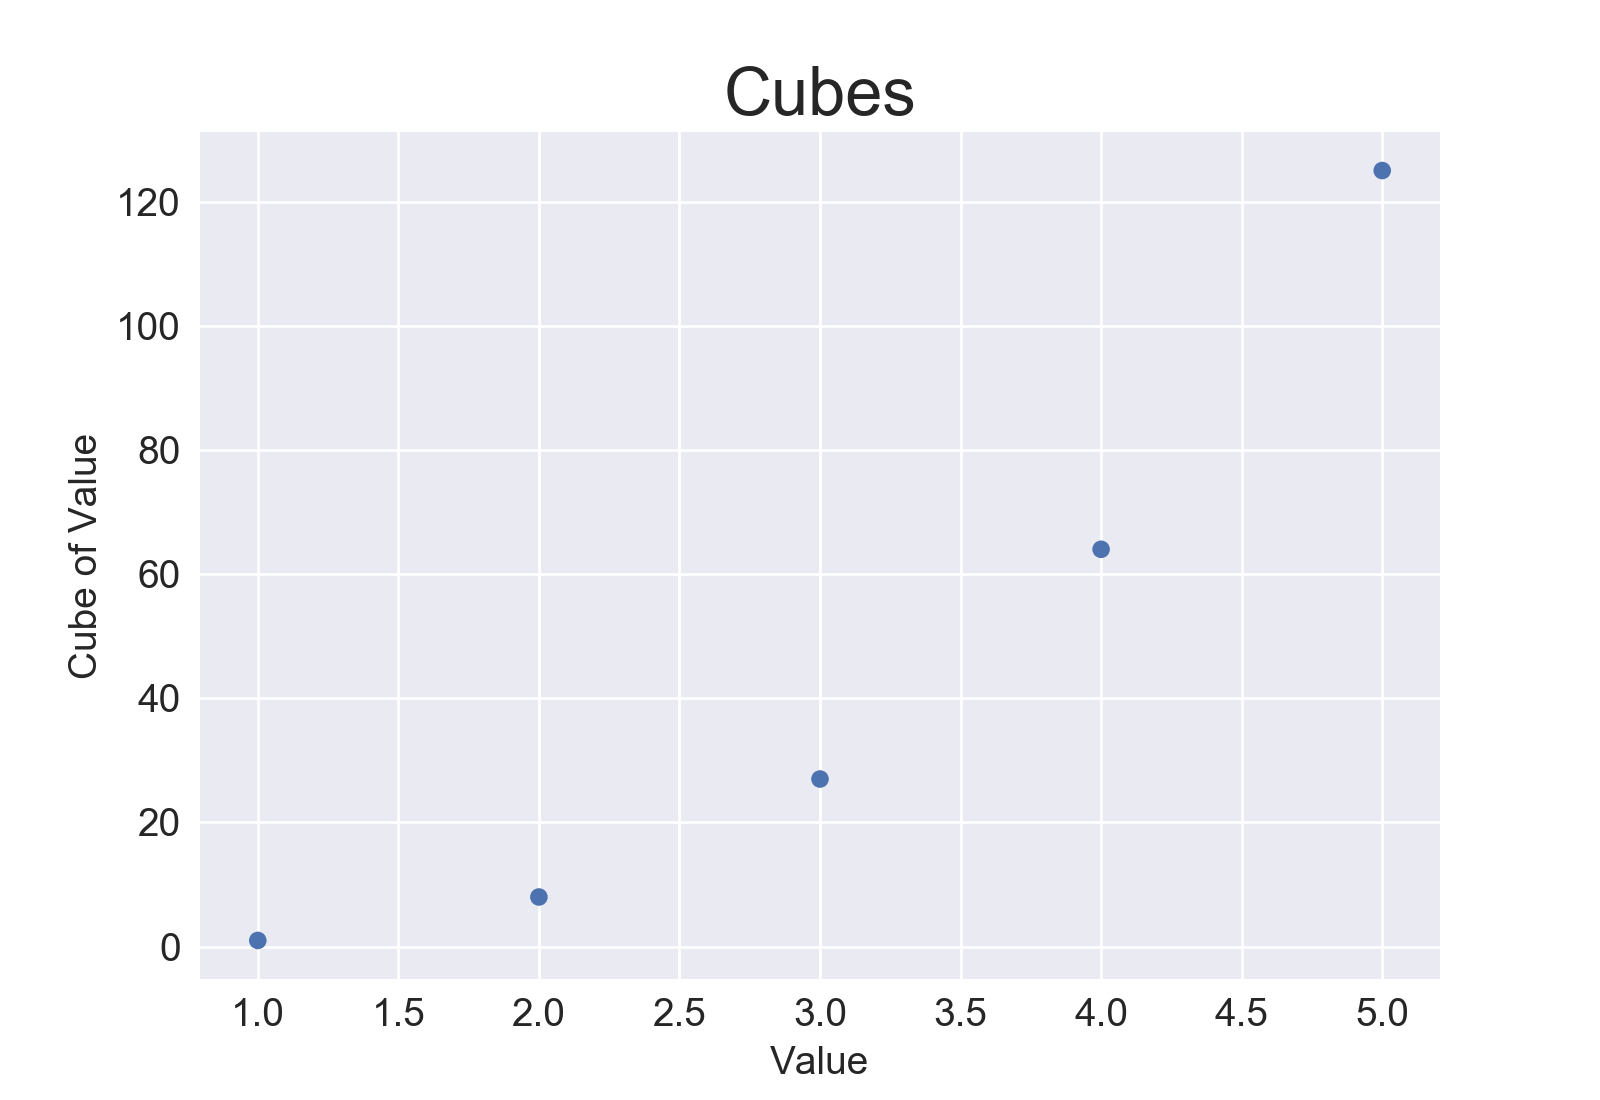 Plot showing 5 cubes